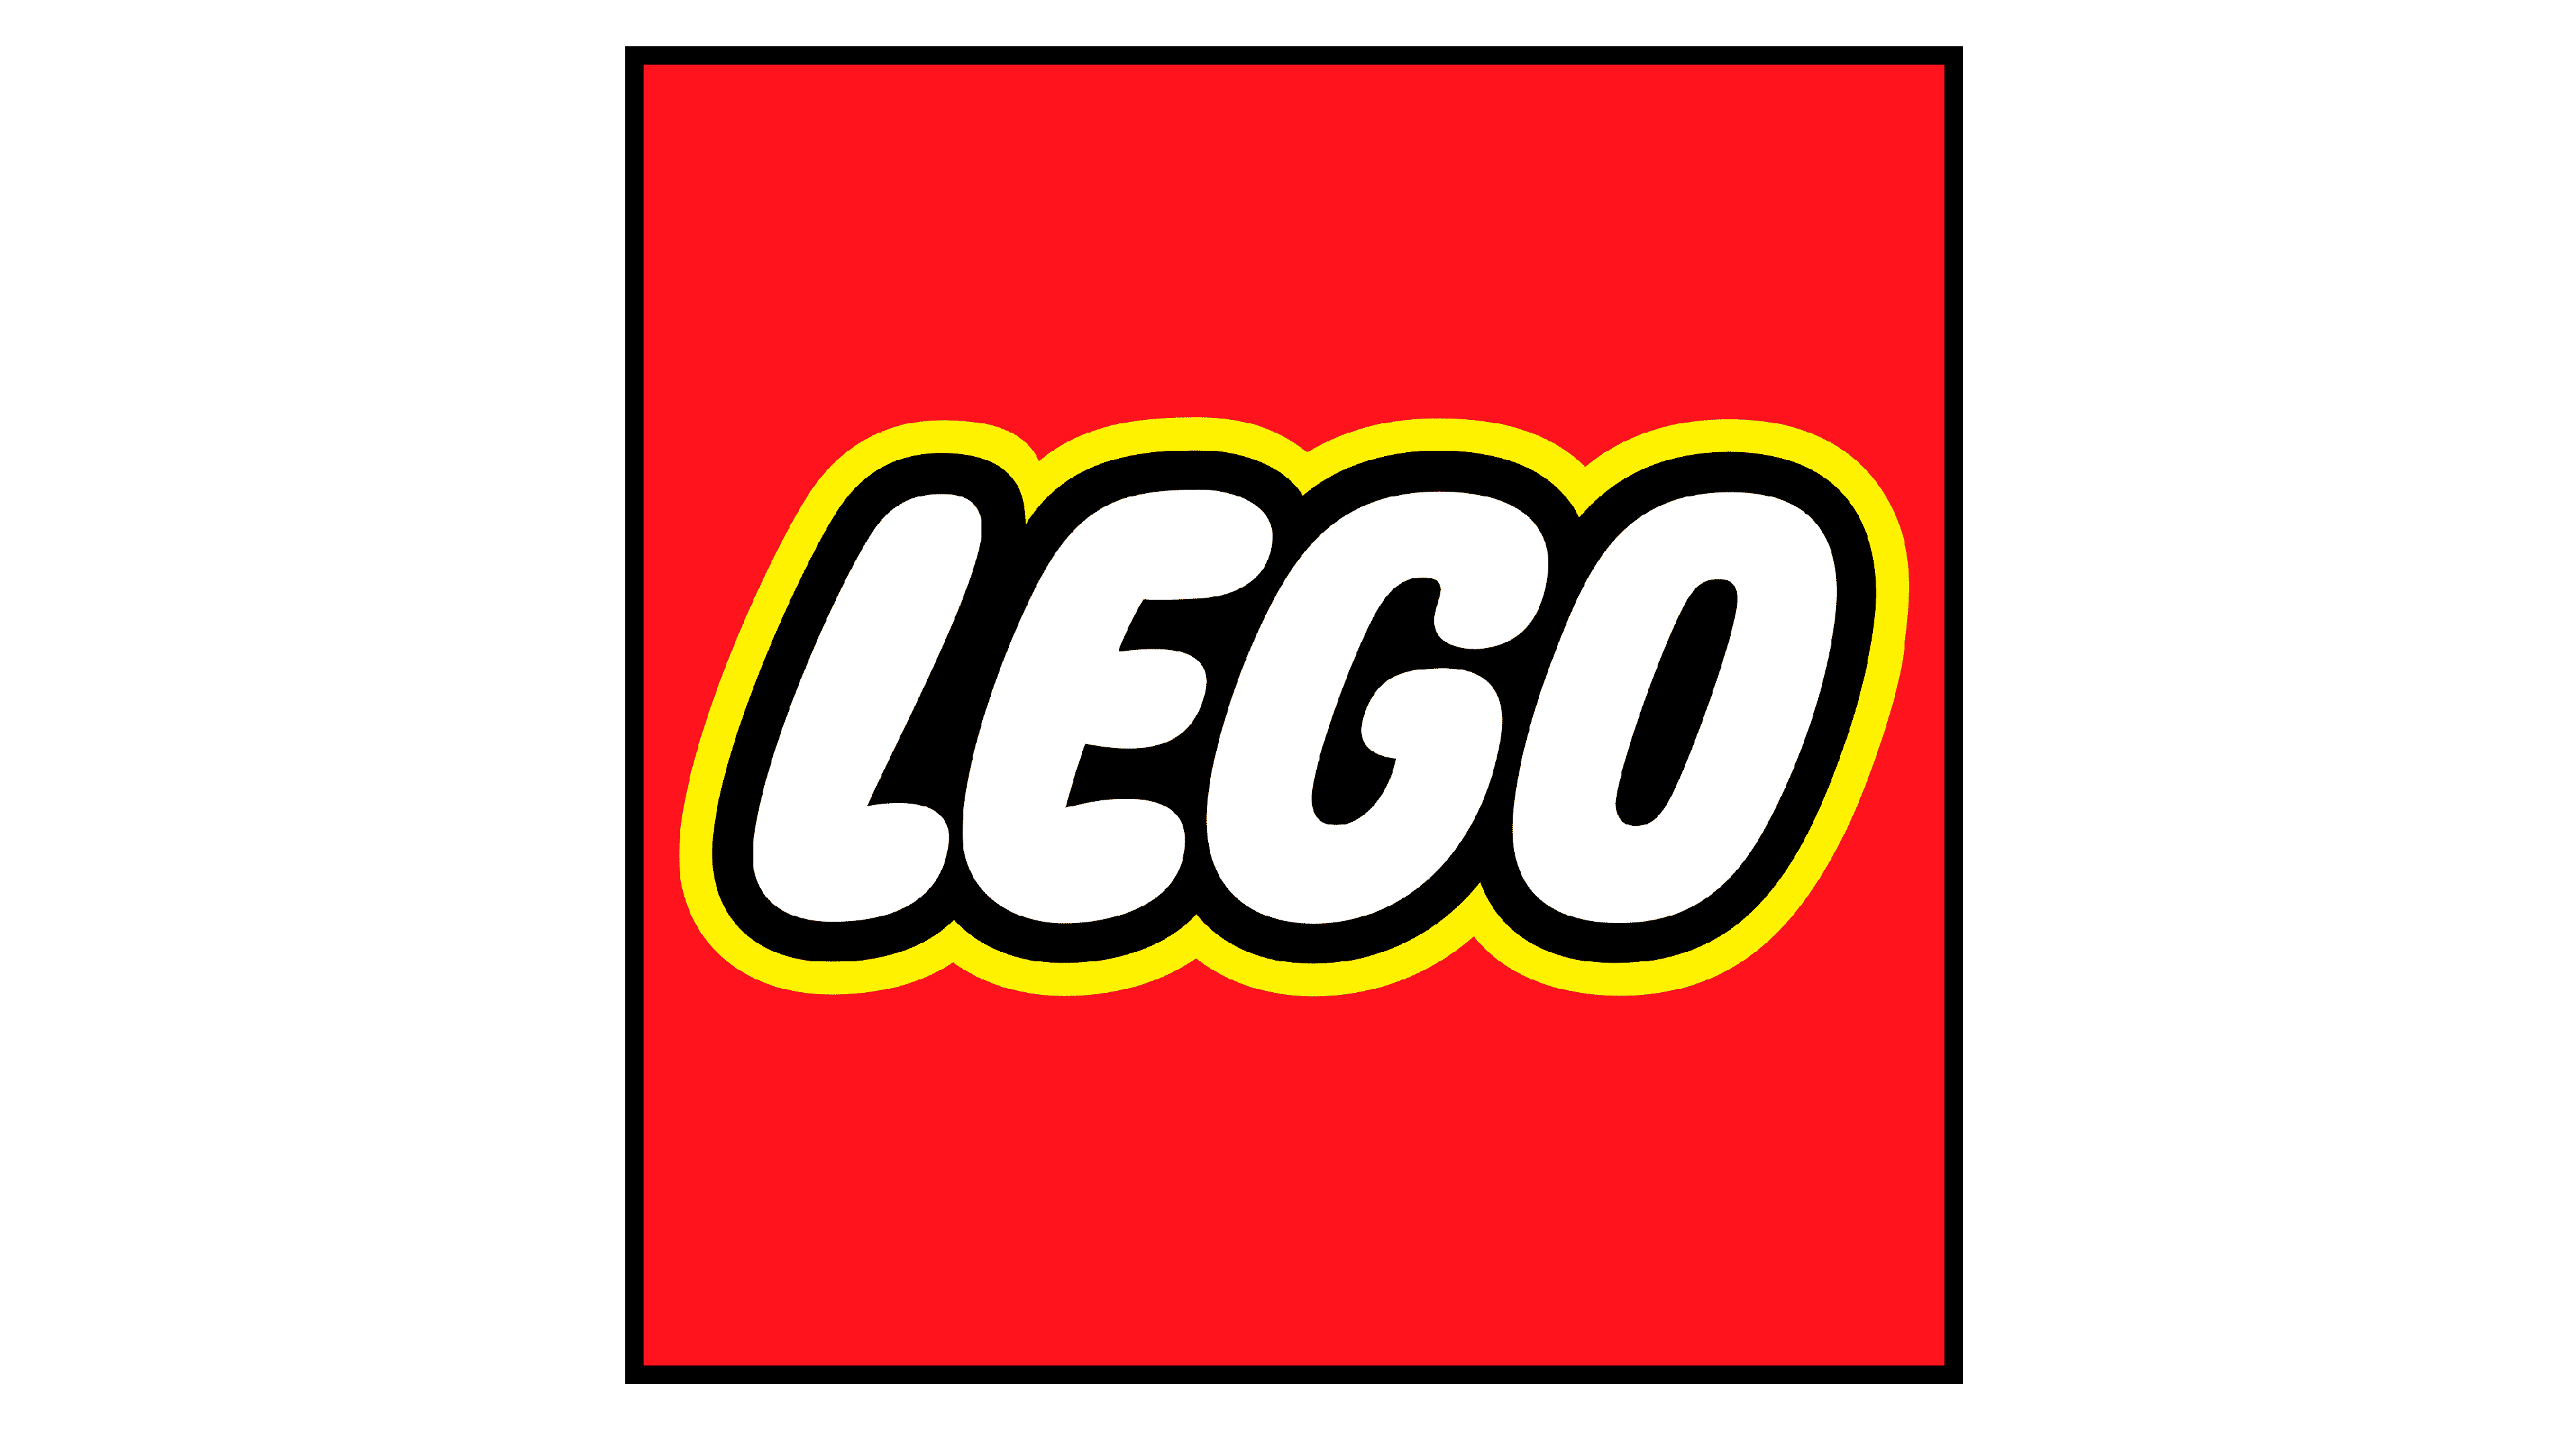 Logotipo de Lego Logo